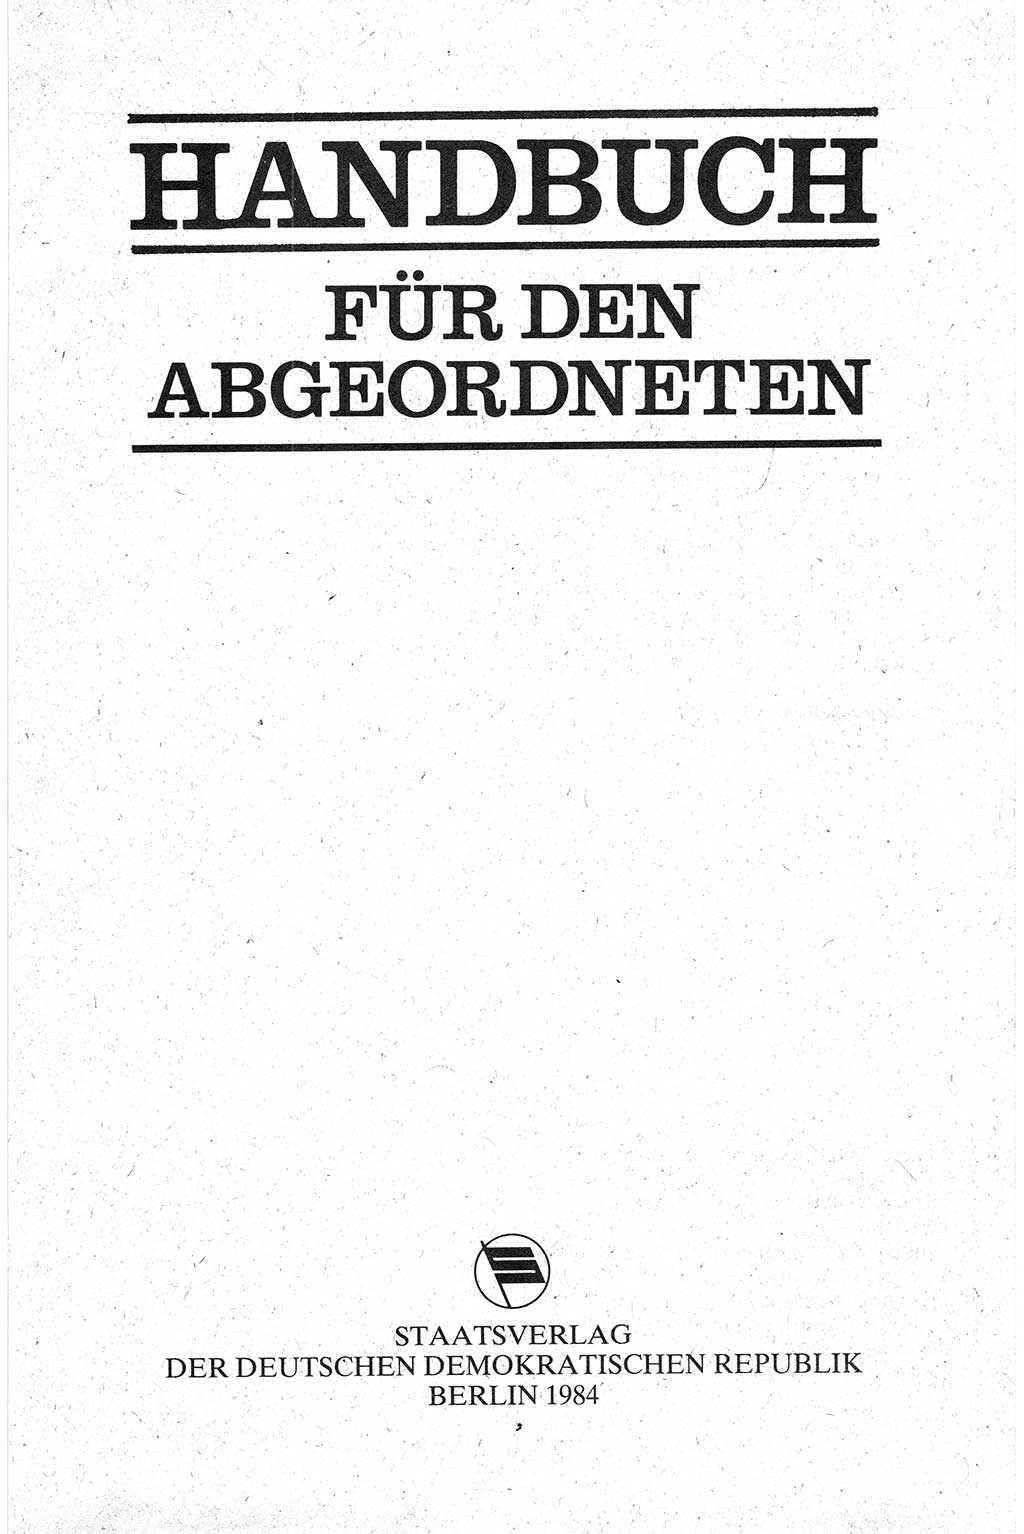 Handbuch für den Abgeordneten [Deutsche Demokratische Republik (DDR)] 1984, Seite 3 (Hb. Abg. DDR 1984, S. 3)